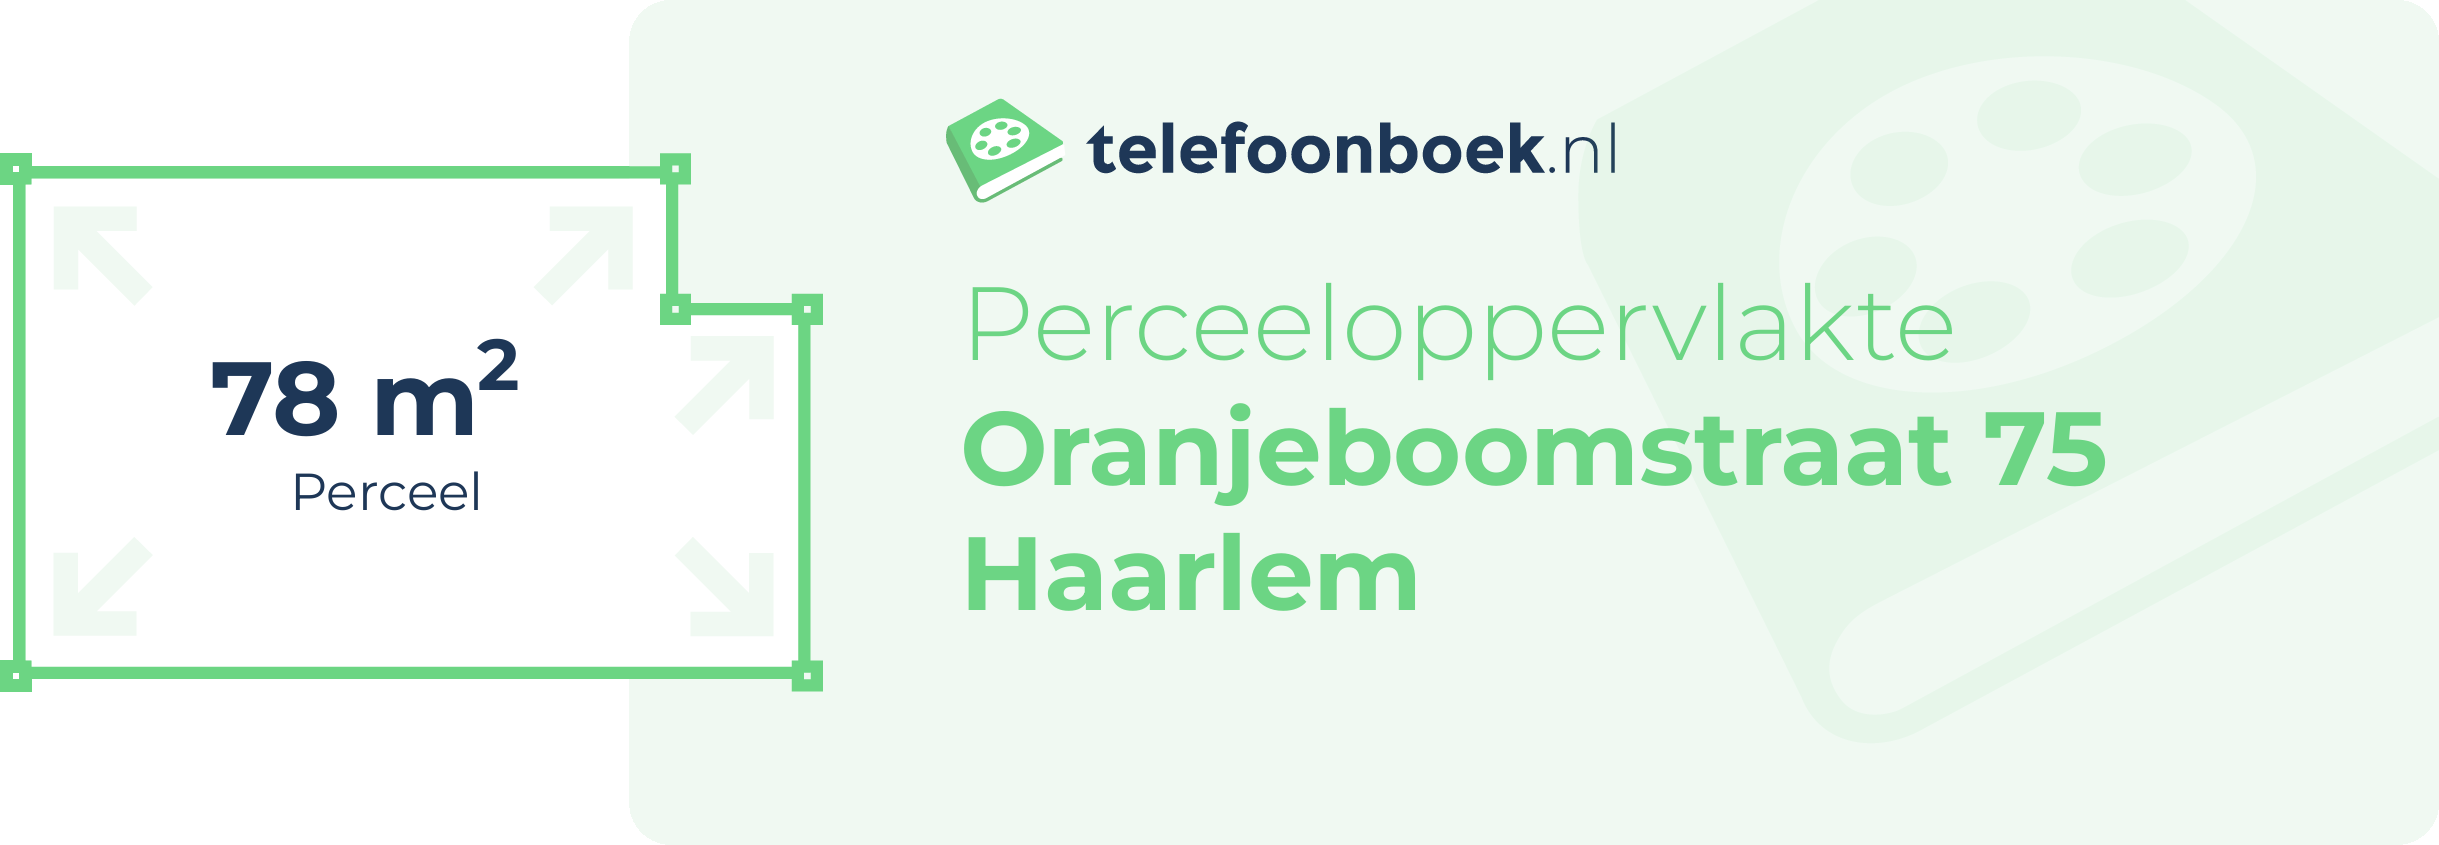 Perceeloppervlakte Oranjeboomstraat 75 Haarlem